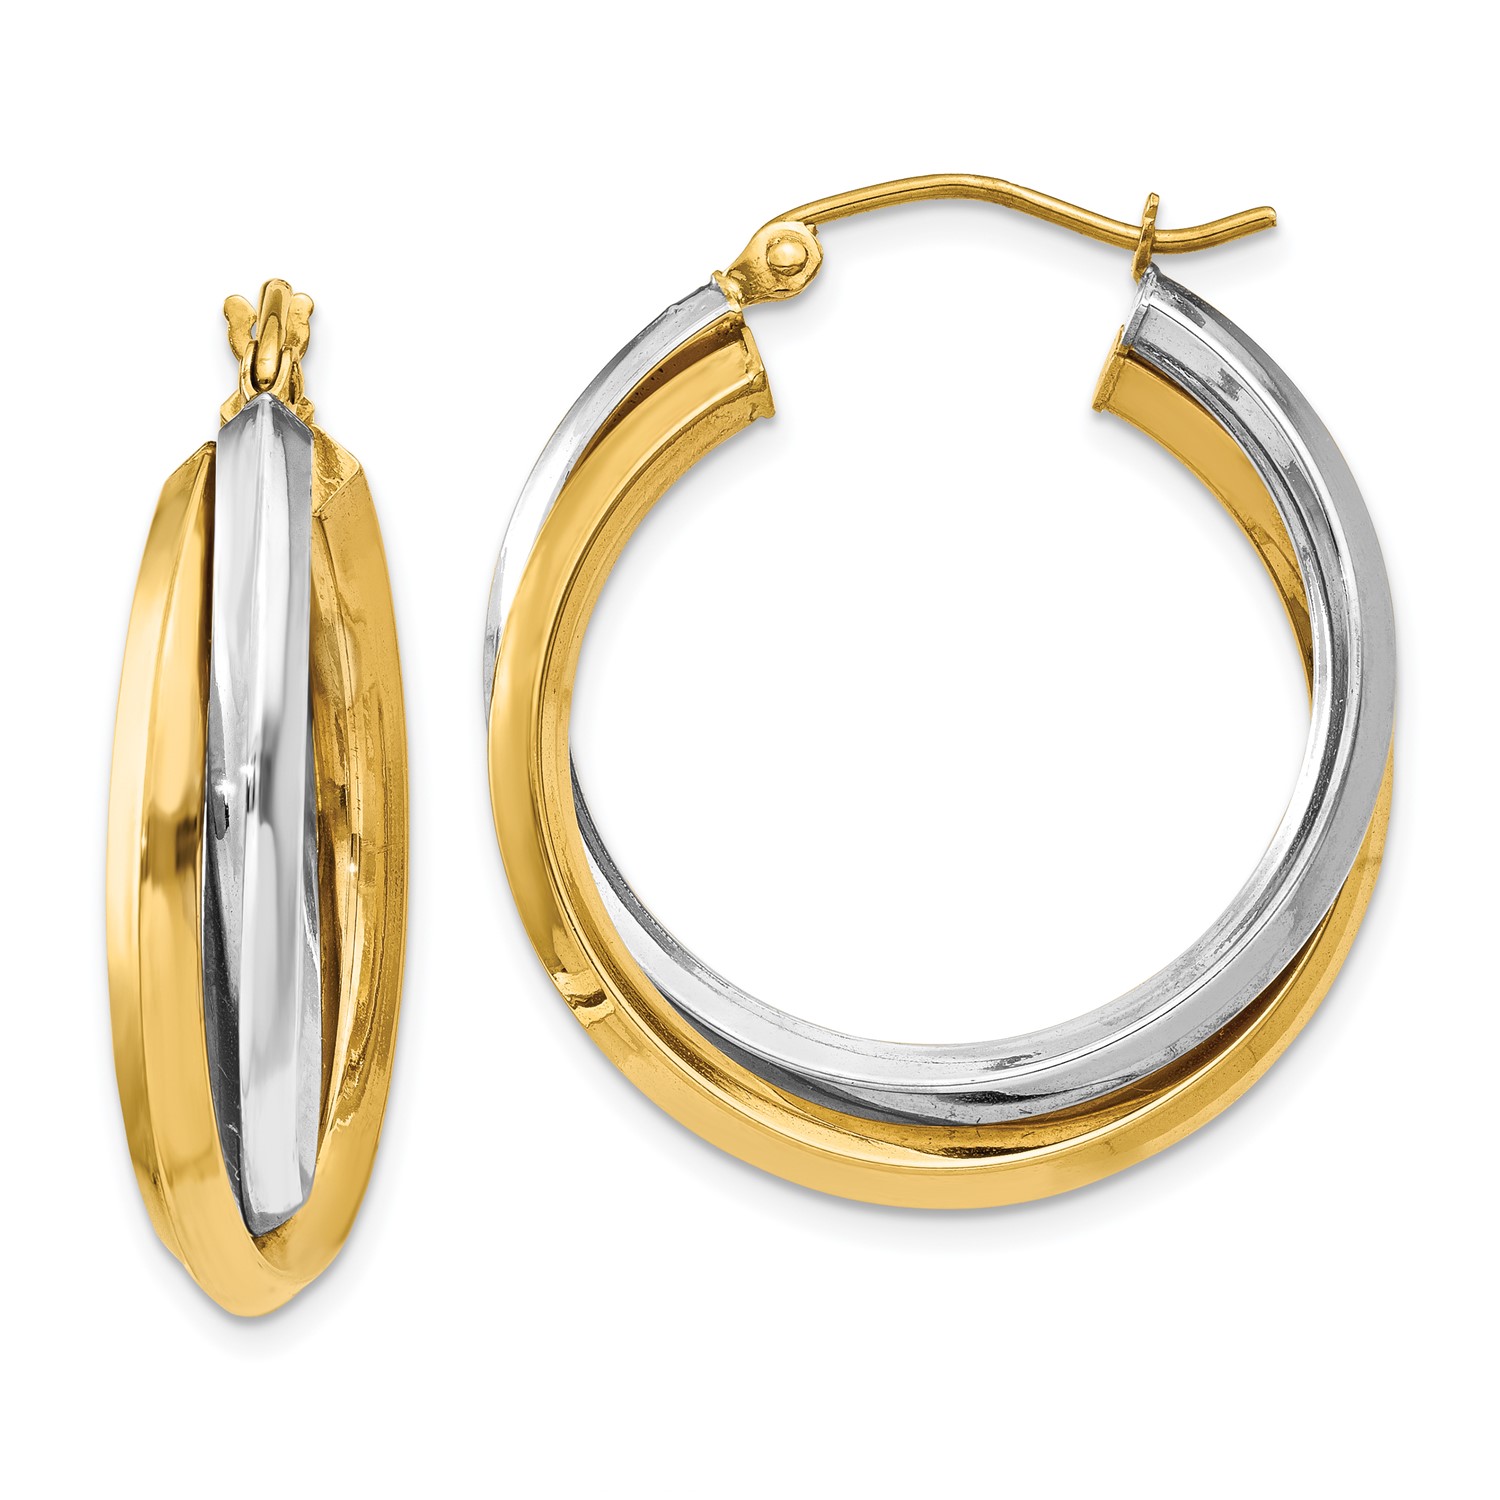 14k Two Tone Gold 0.7IN Long Polished Double Hoop Earrings 849833026821 | eBay